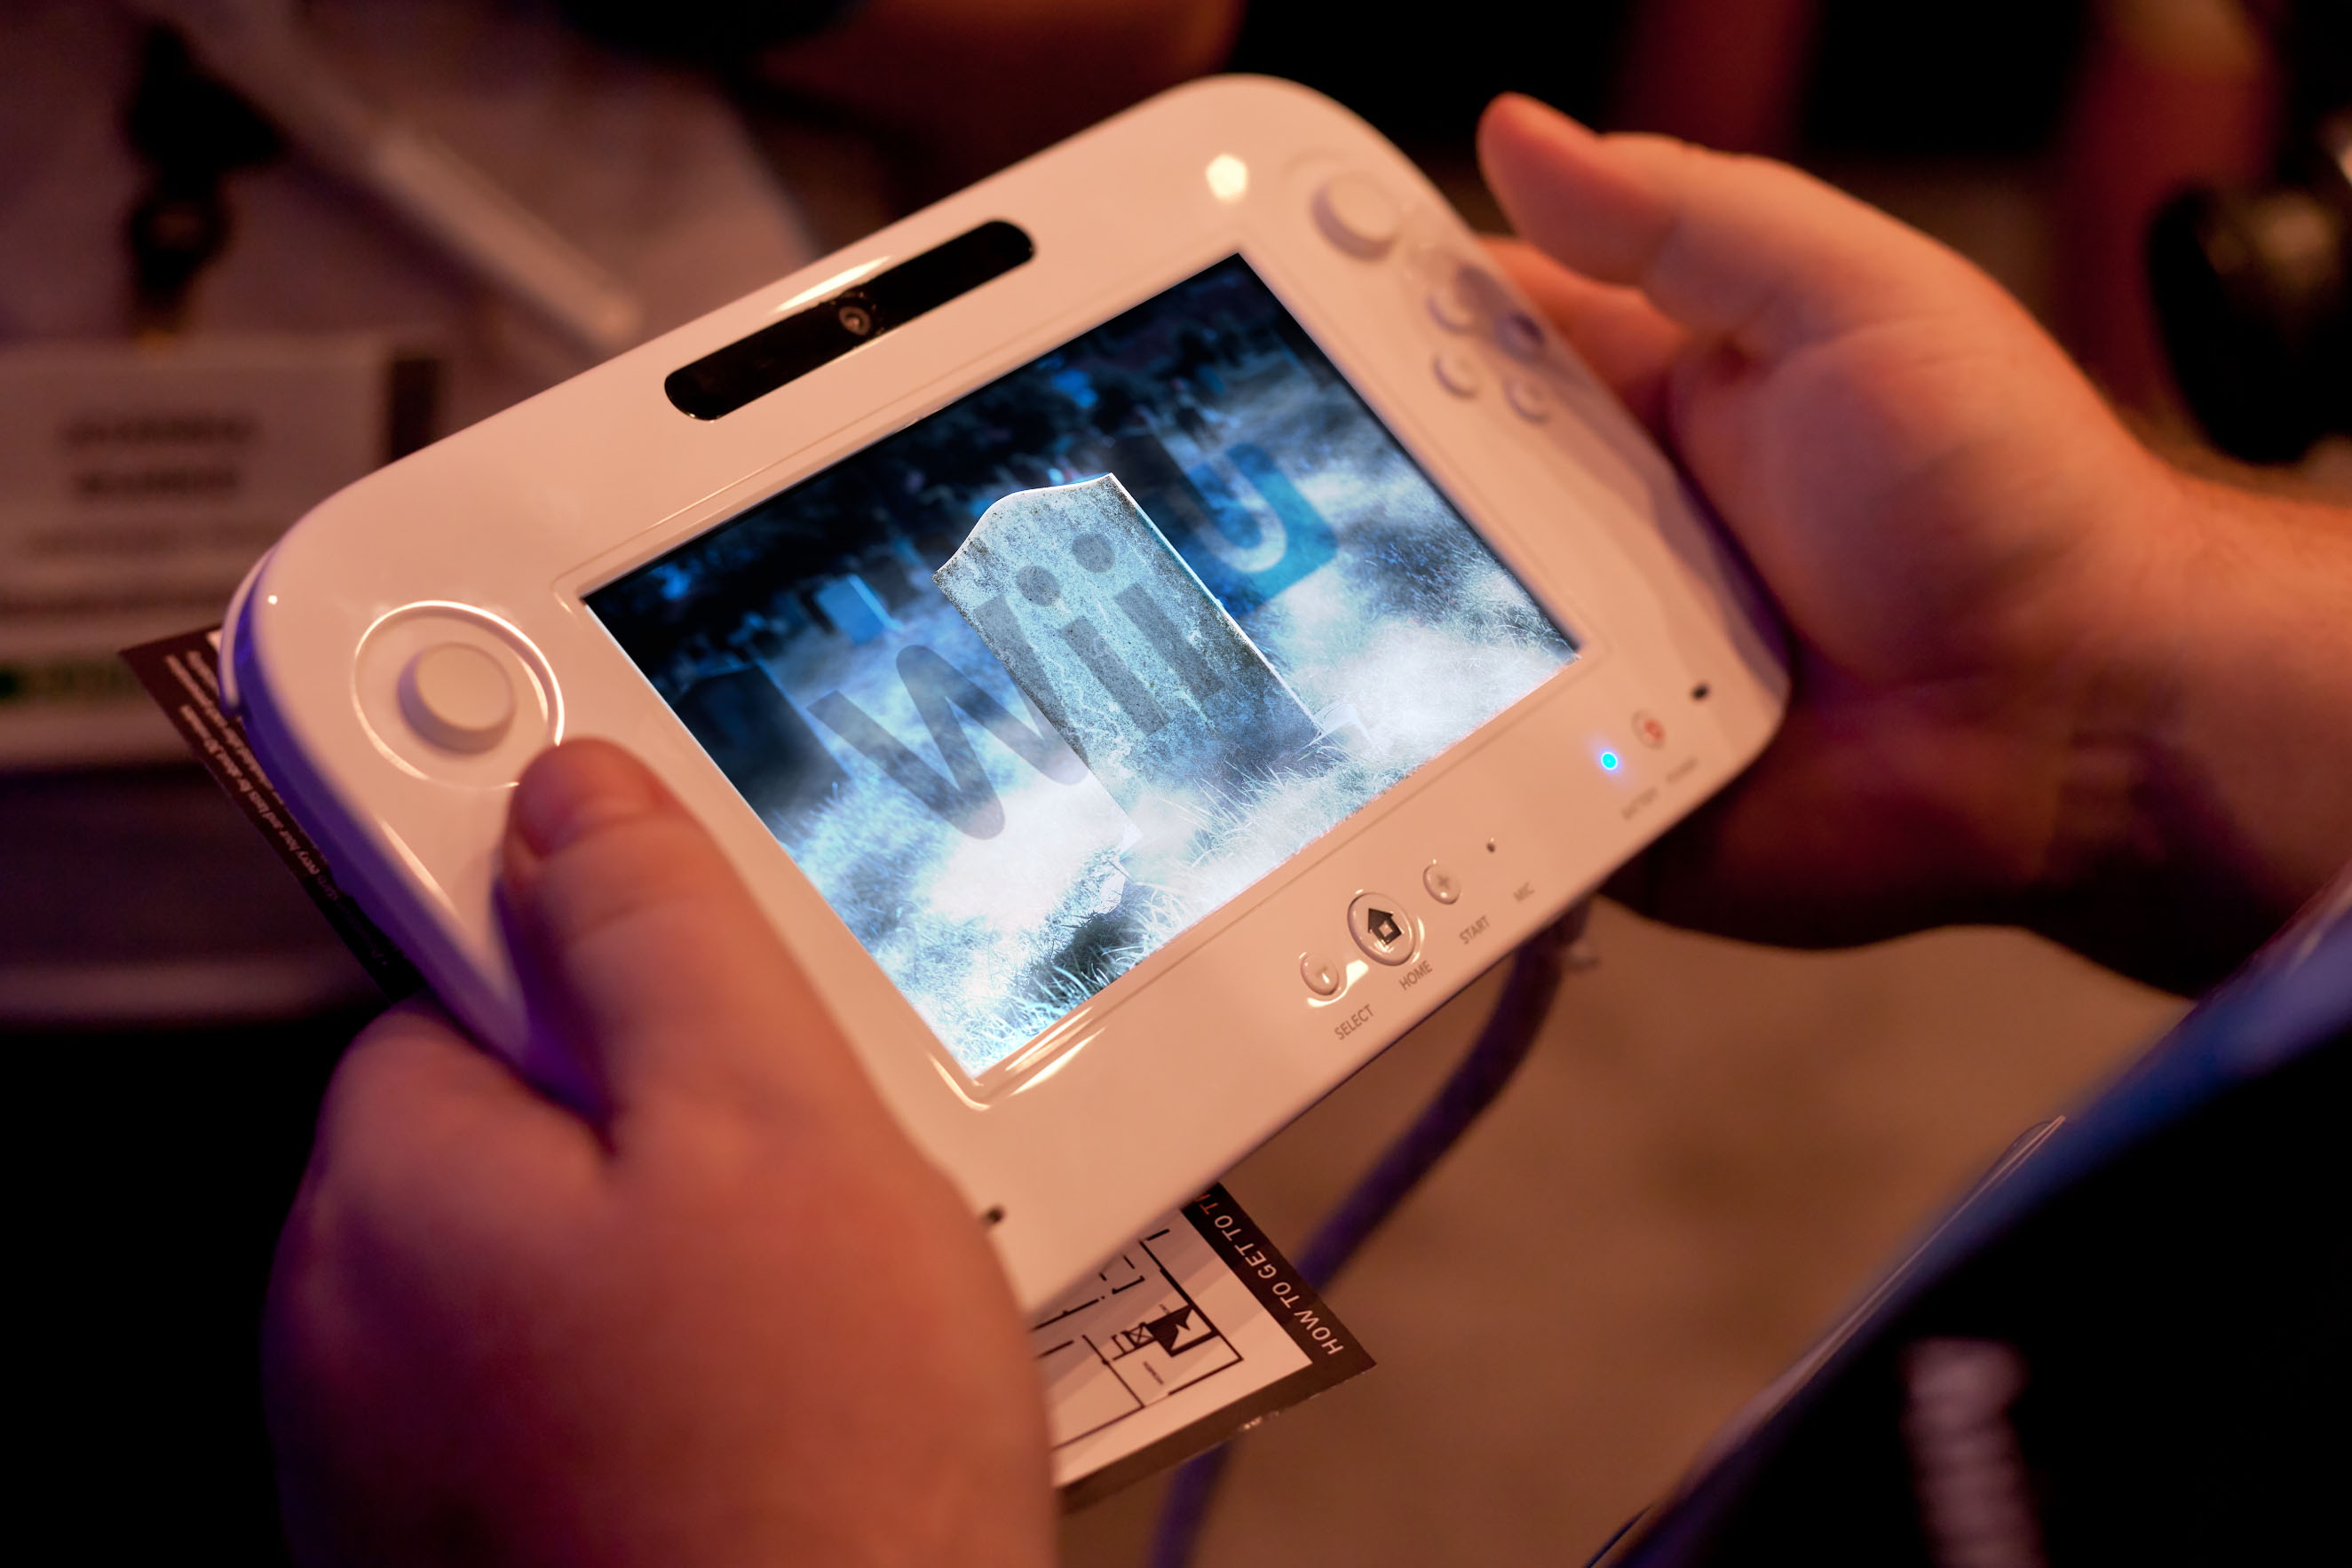 La console de salon Wii U ne trouve pas son public - Le Temps